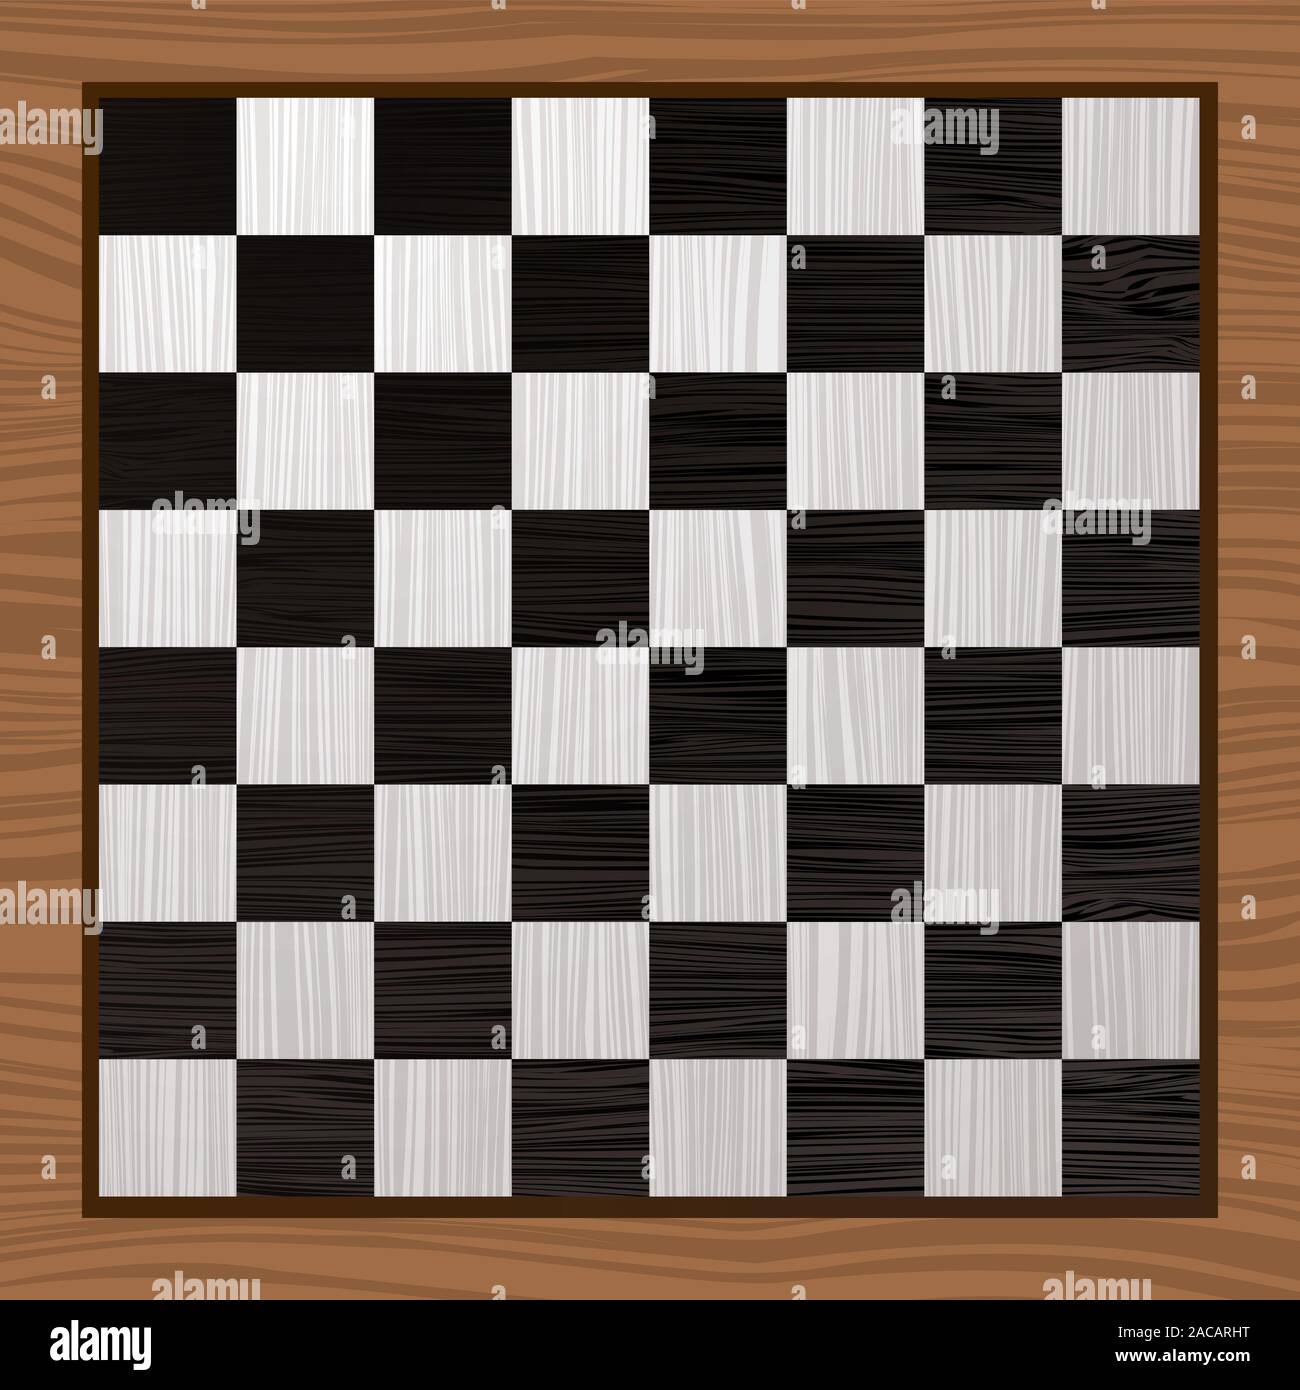 Tablero de ajedrez en blanco y negro Foto de stock